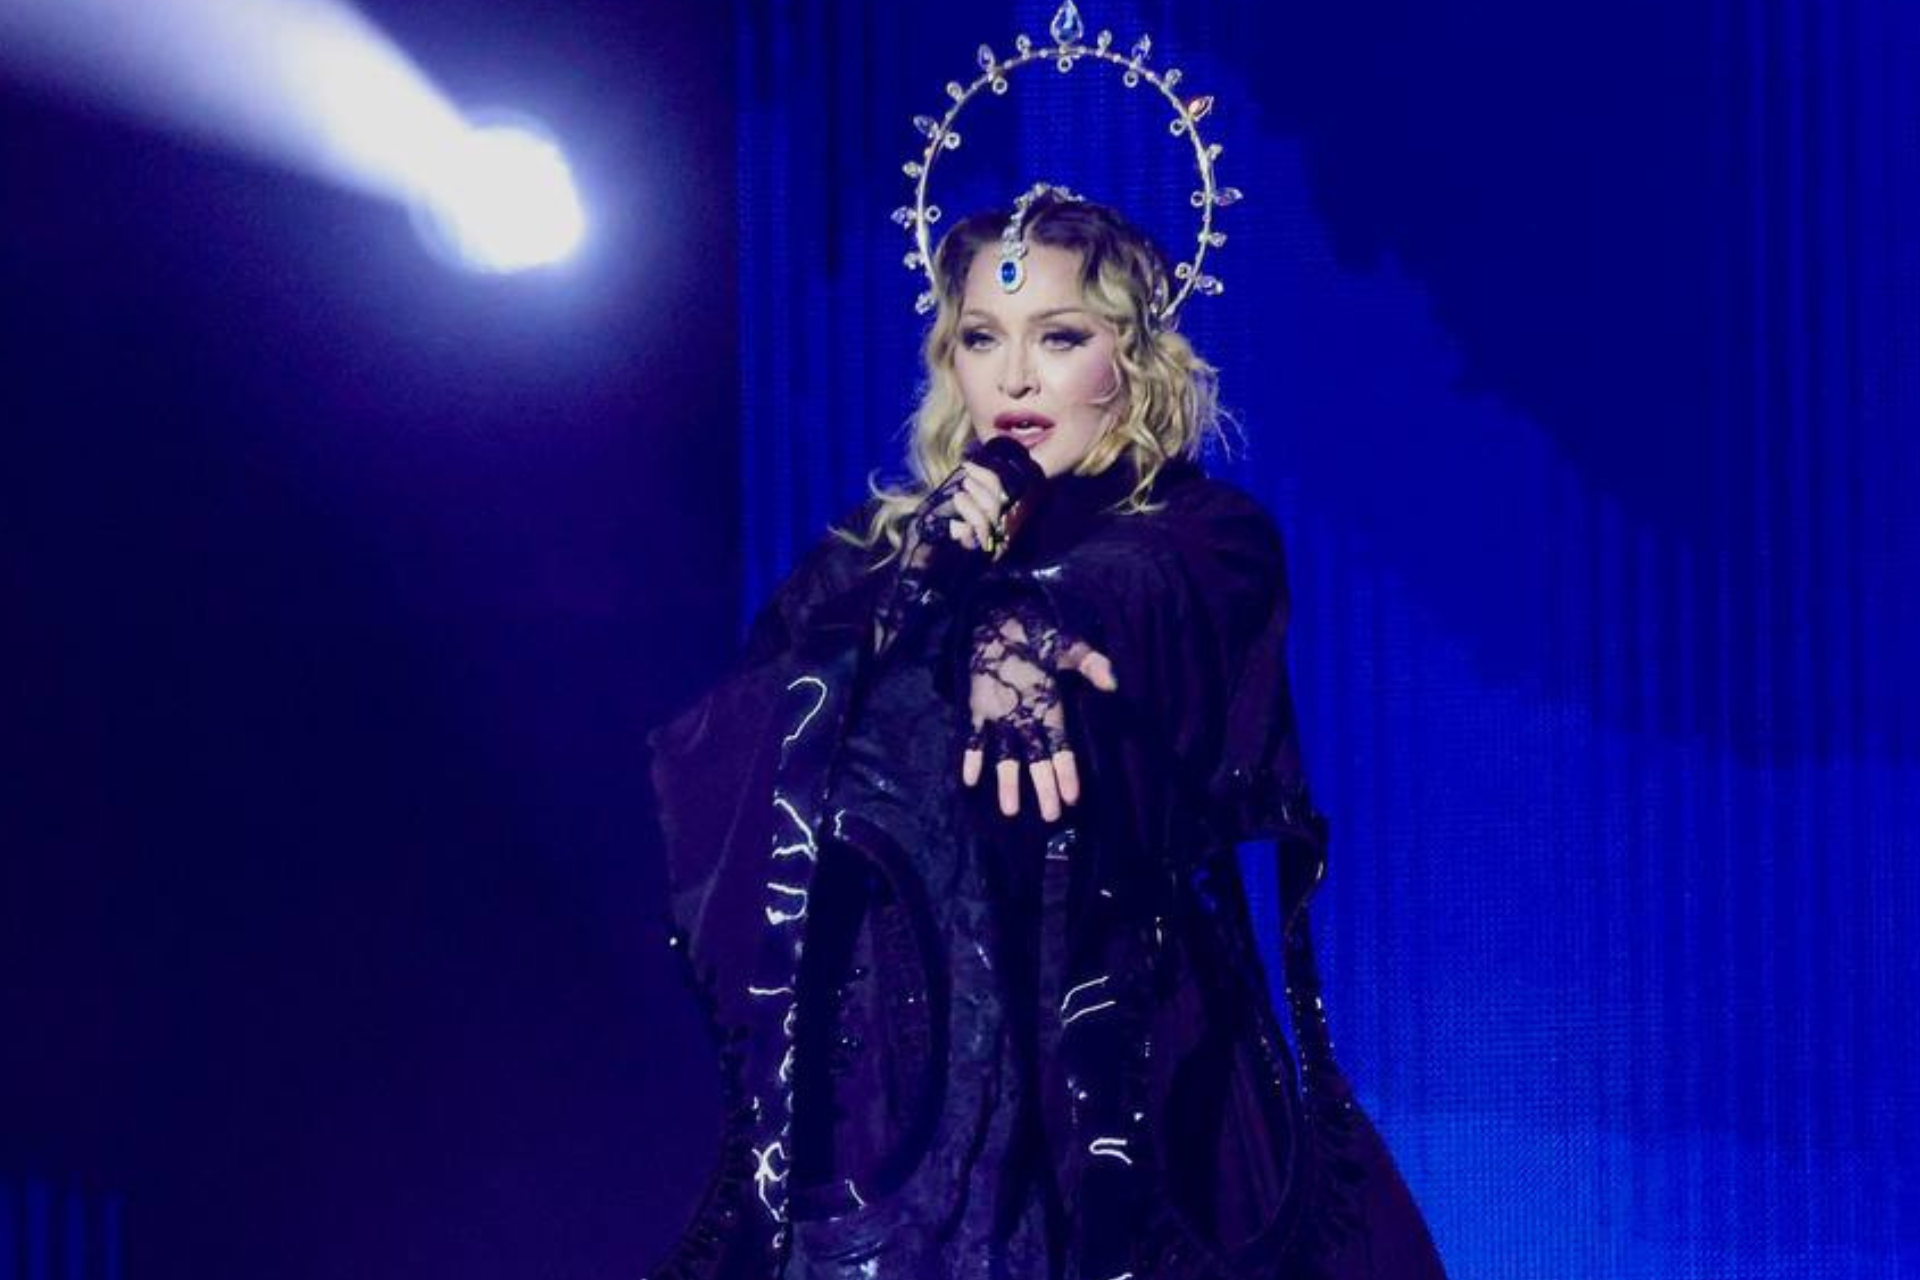 Reprise de Madonna muda de horário para transmissão de show de Luan Santana